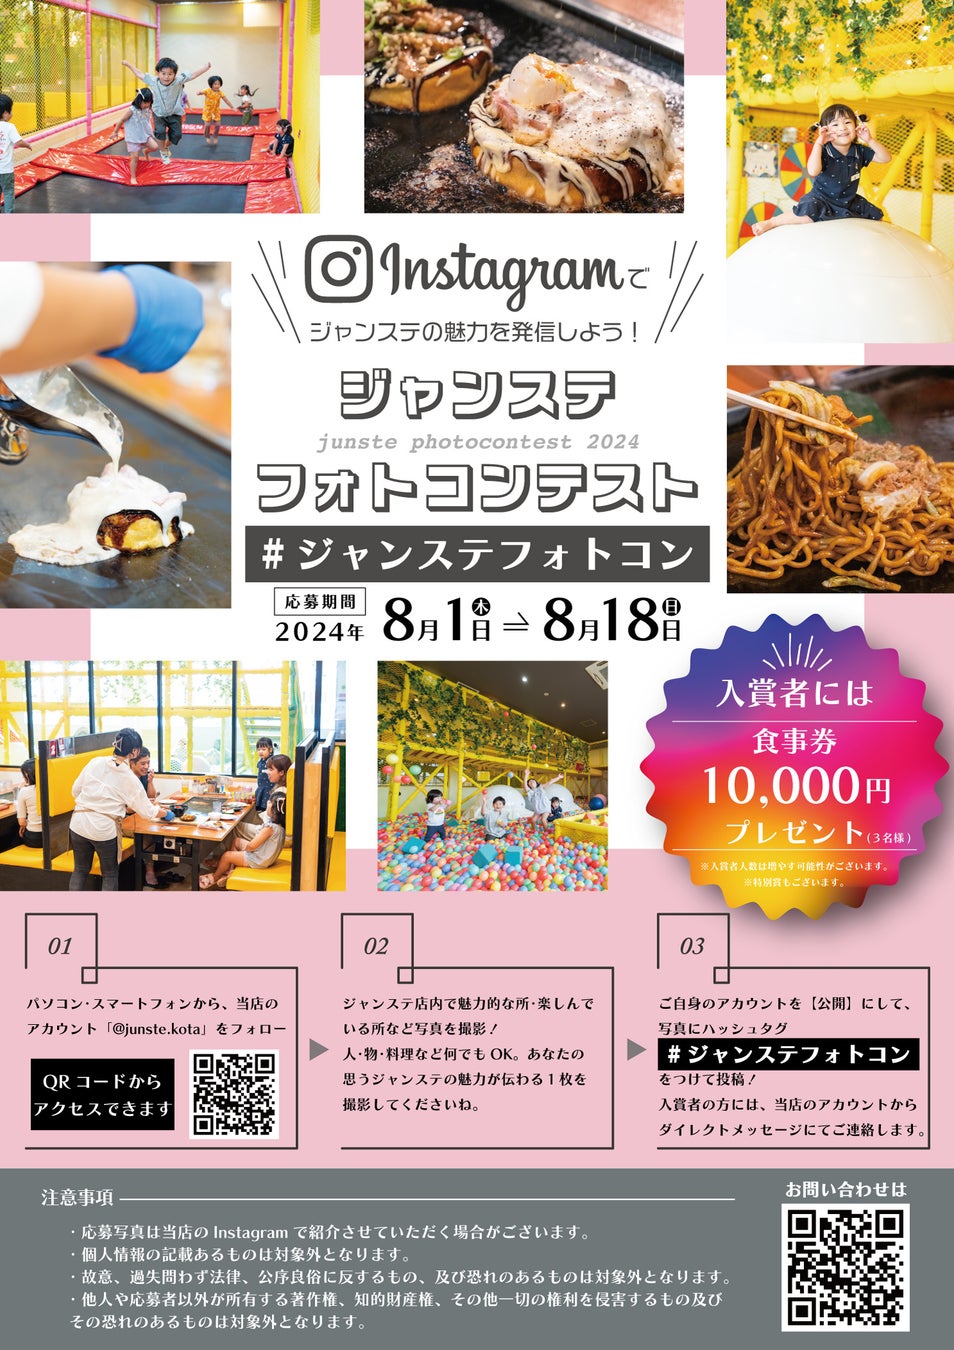 10,000円分の食事券プレゼント！愛知県幸田町の「遊べる鉄板/お好み焼き屋さん」ジャンステの魅力が伝わる１枚をInstagramに投稿して食事券を獲得しよう。